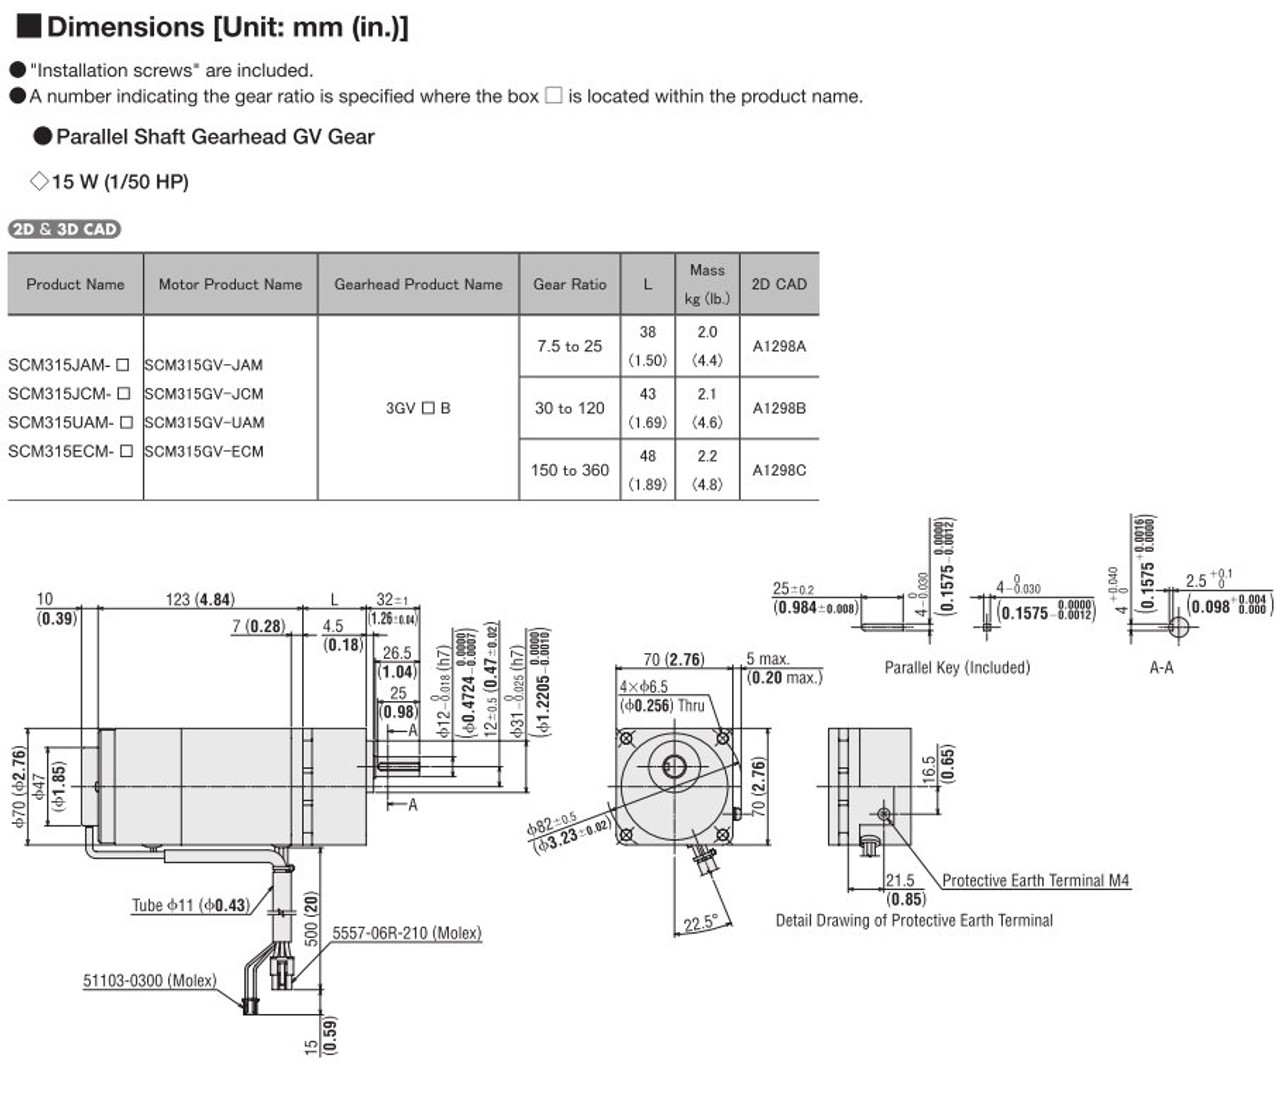 SCM315ECM-300 - Dimensions